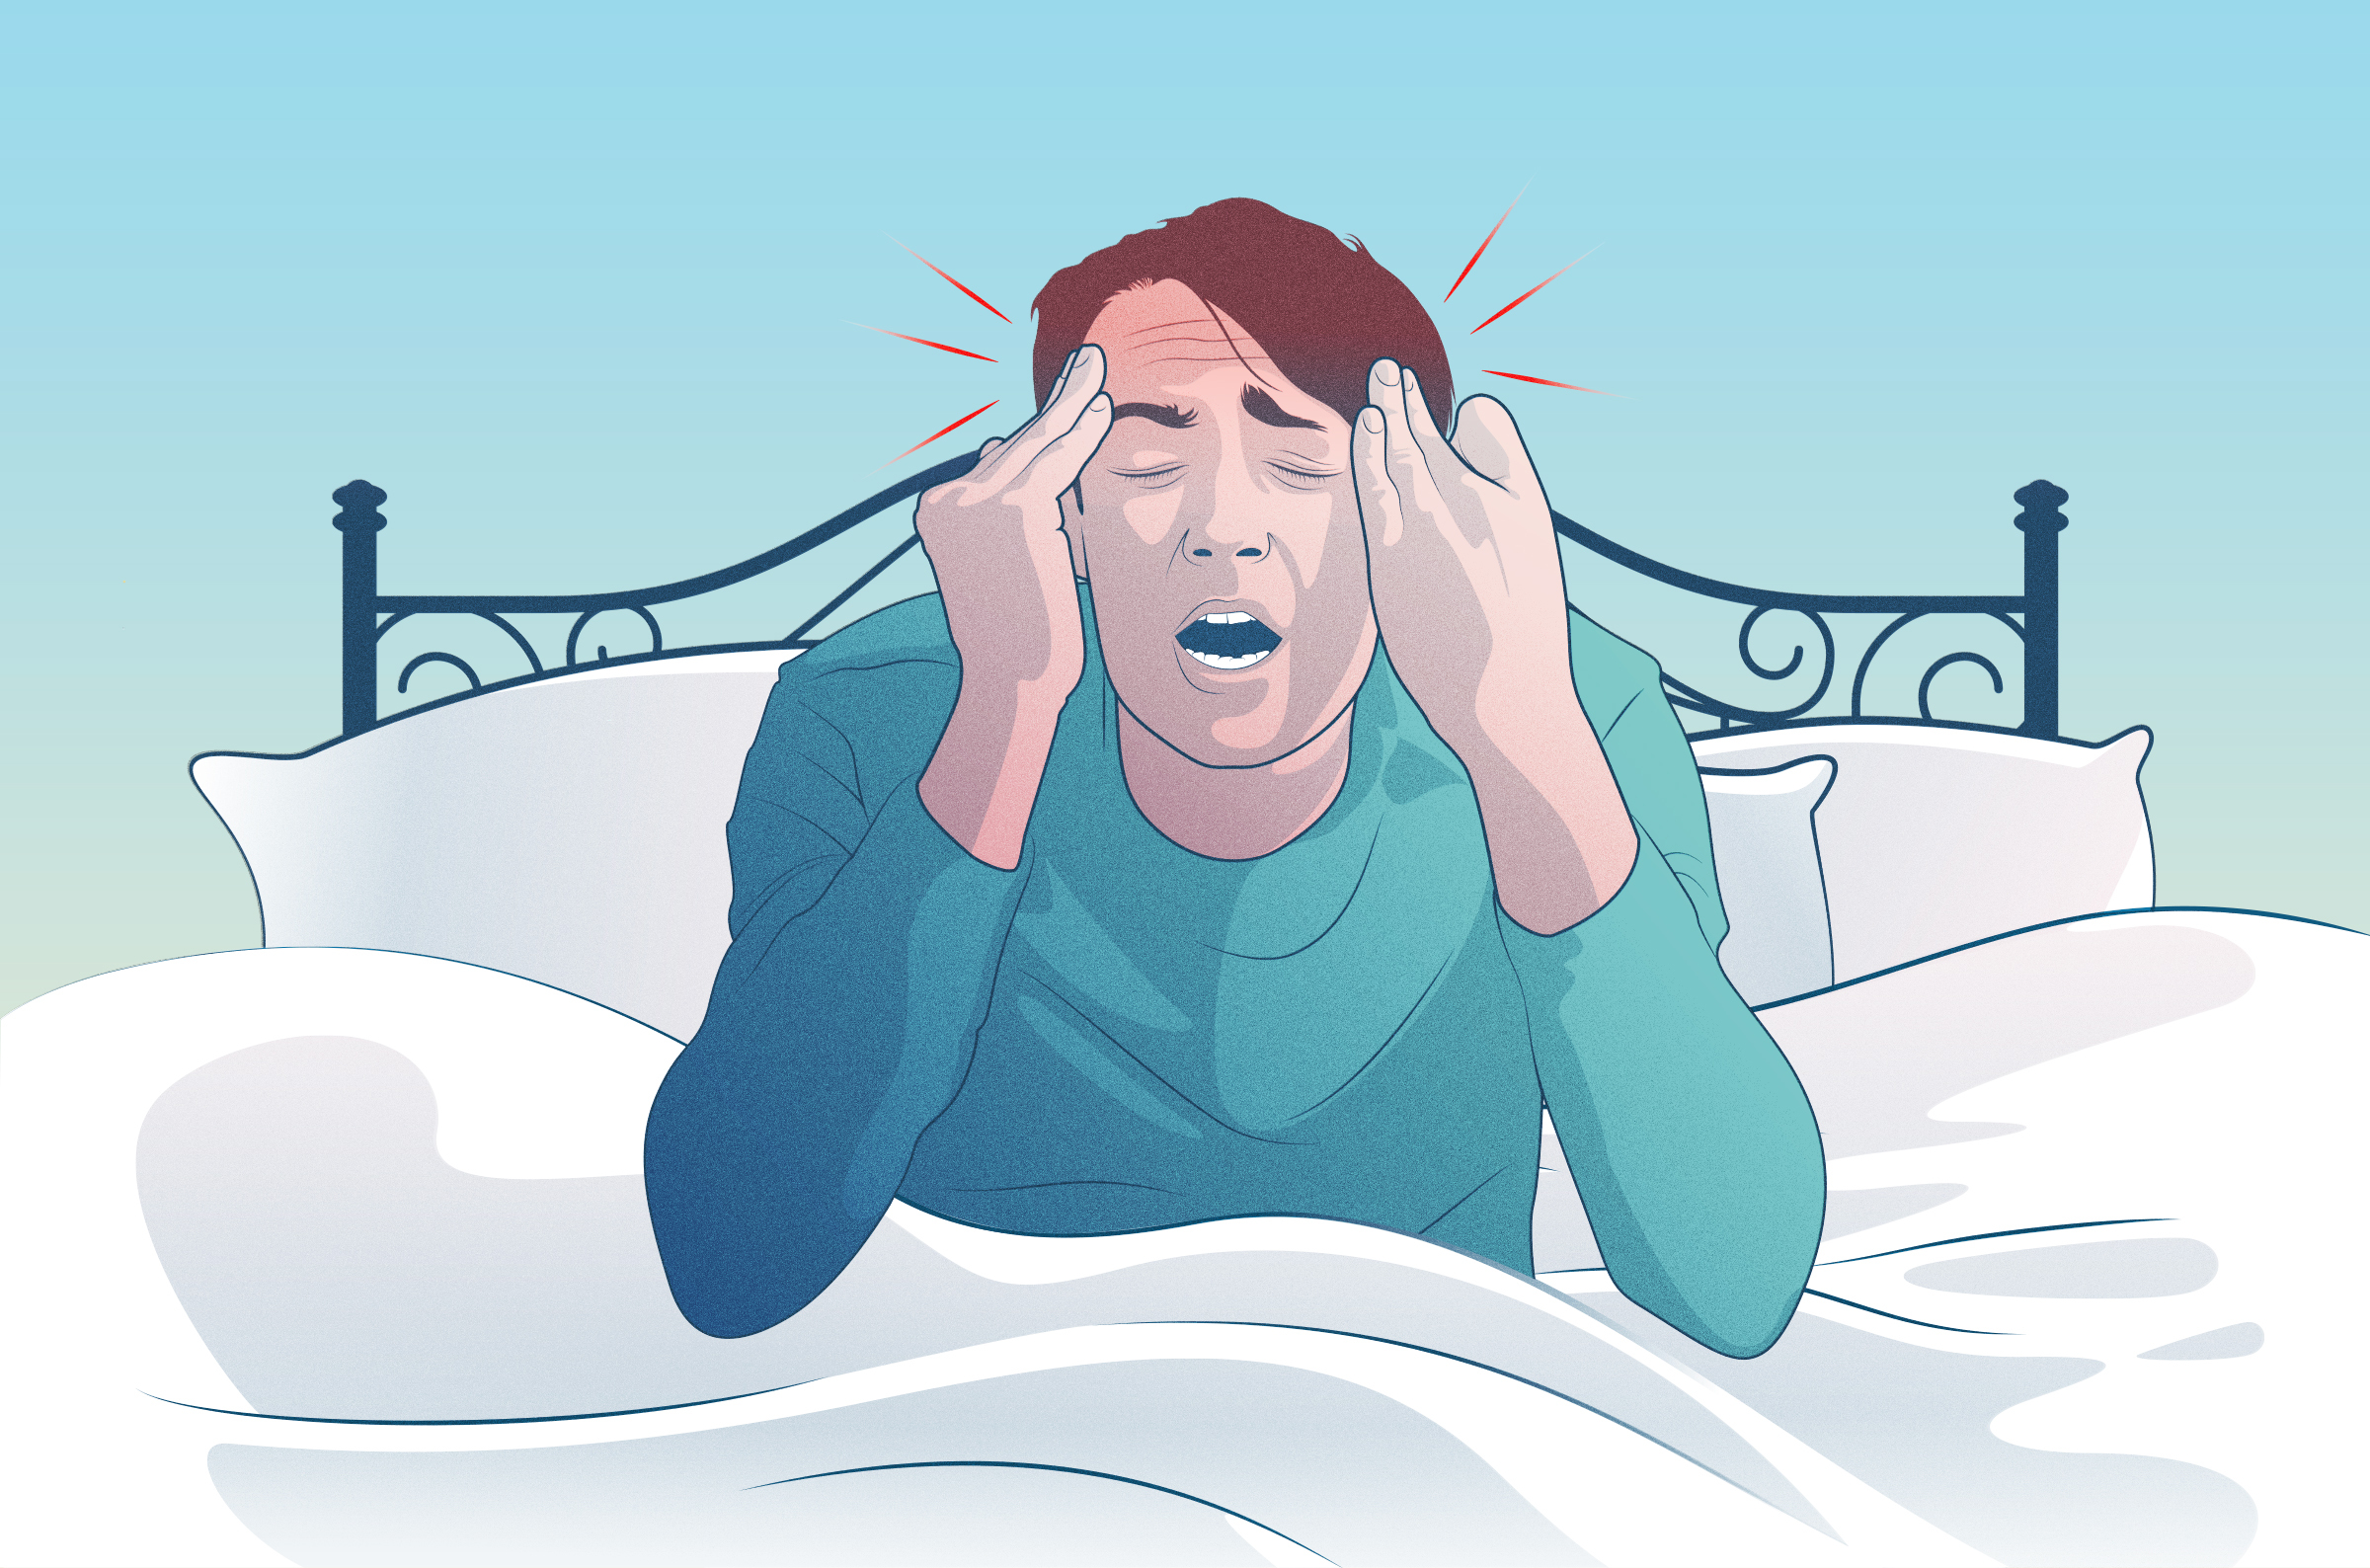 headache after sleeping on foam mattress